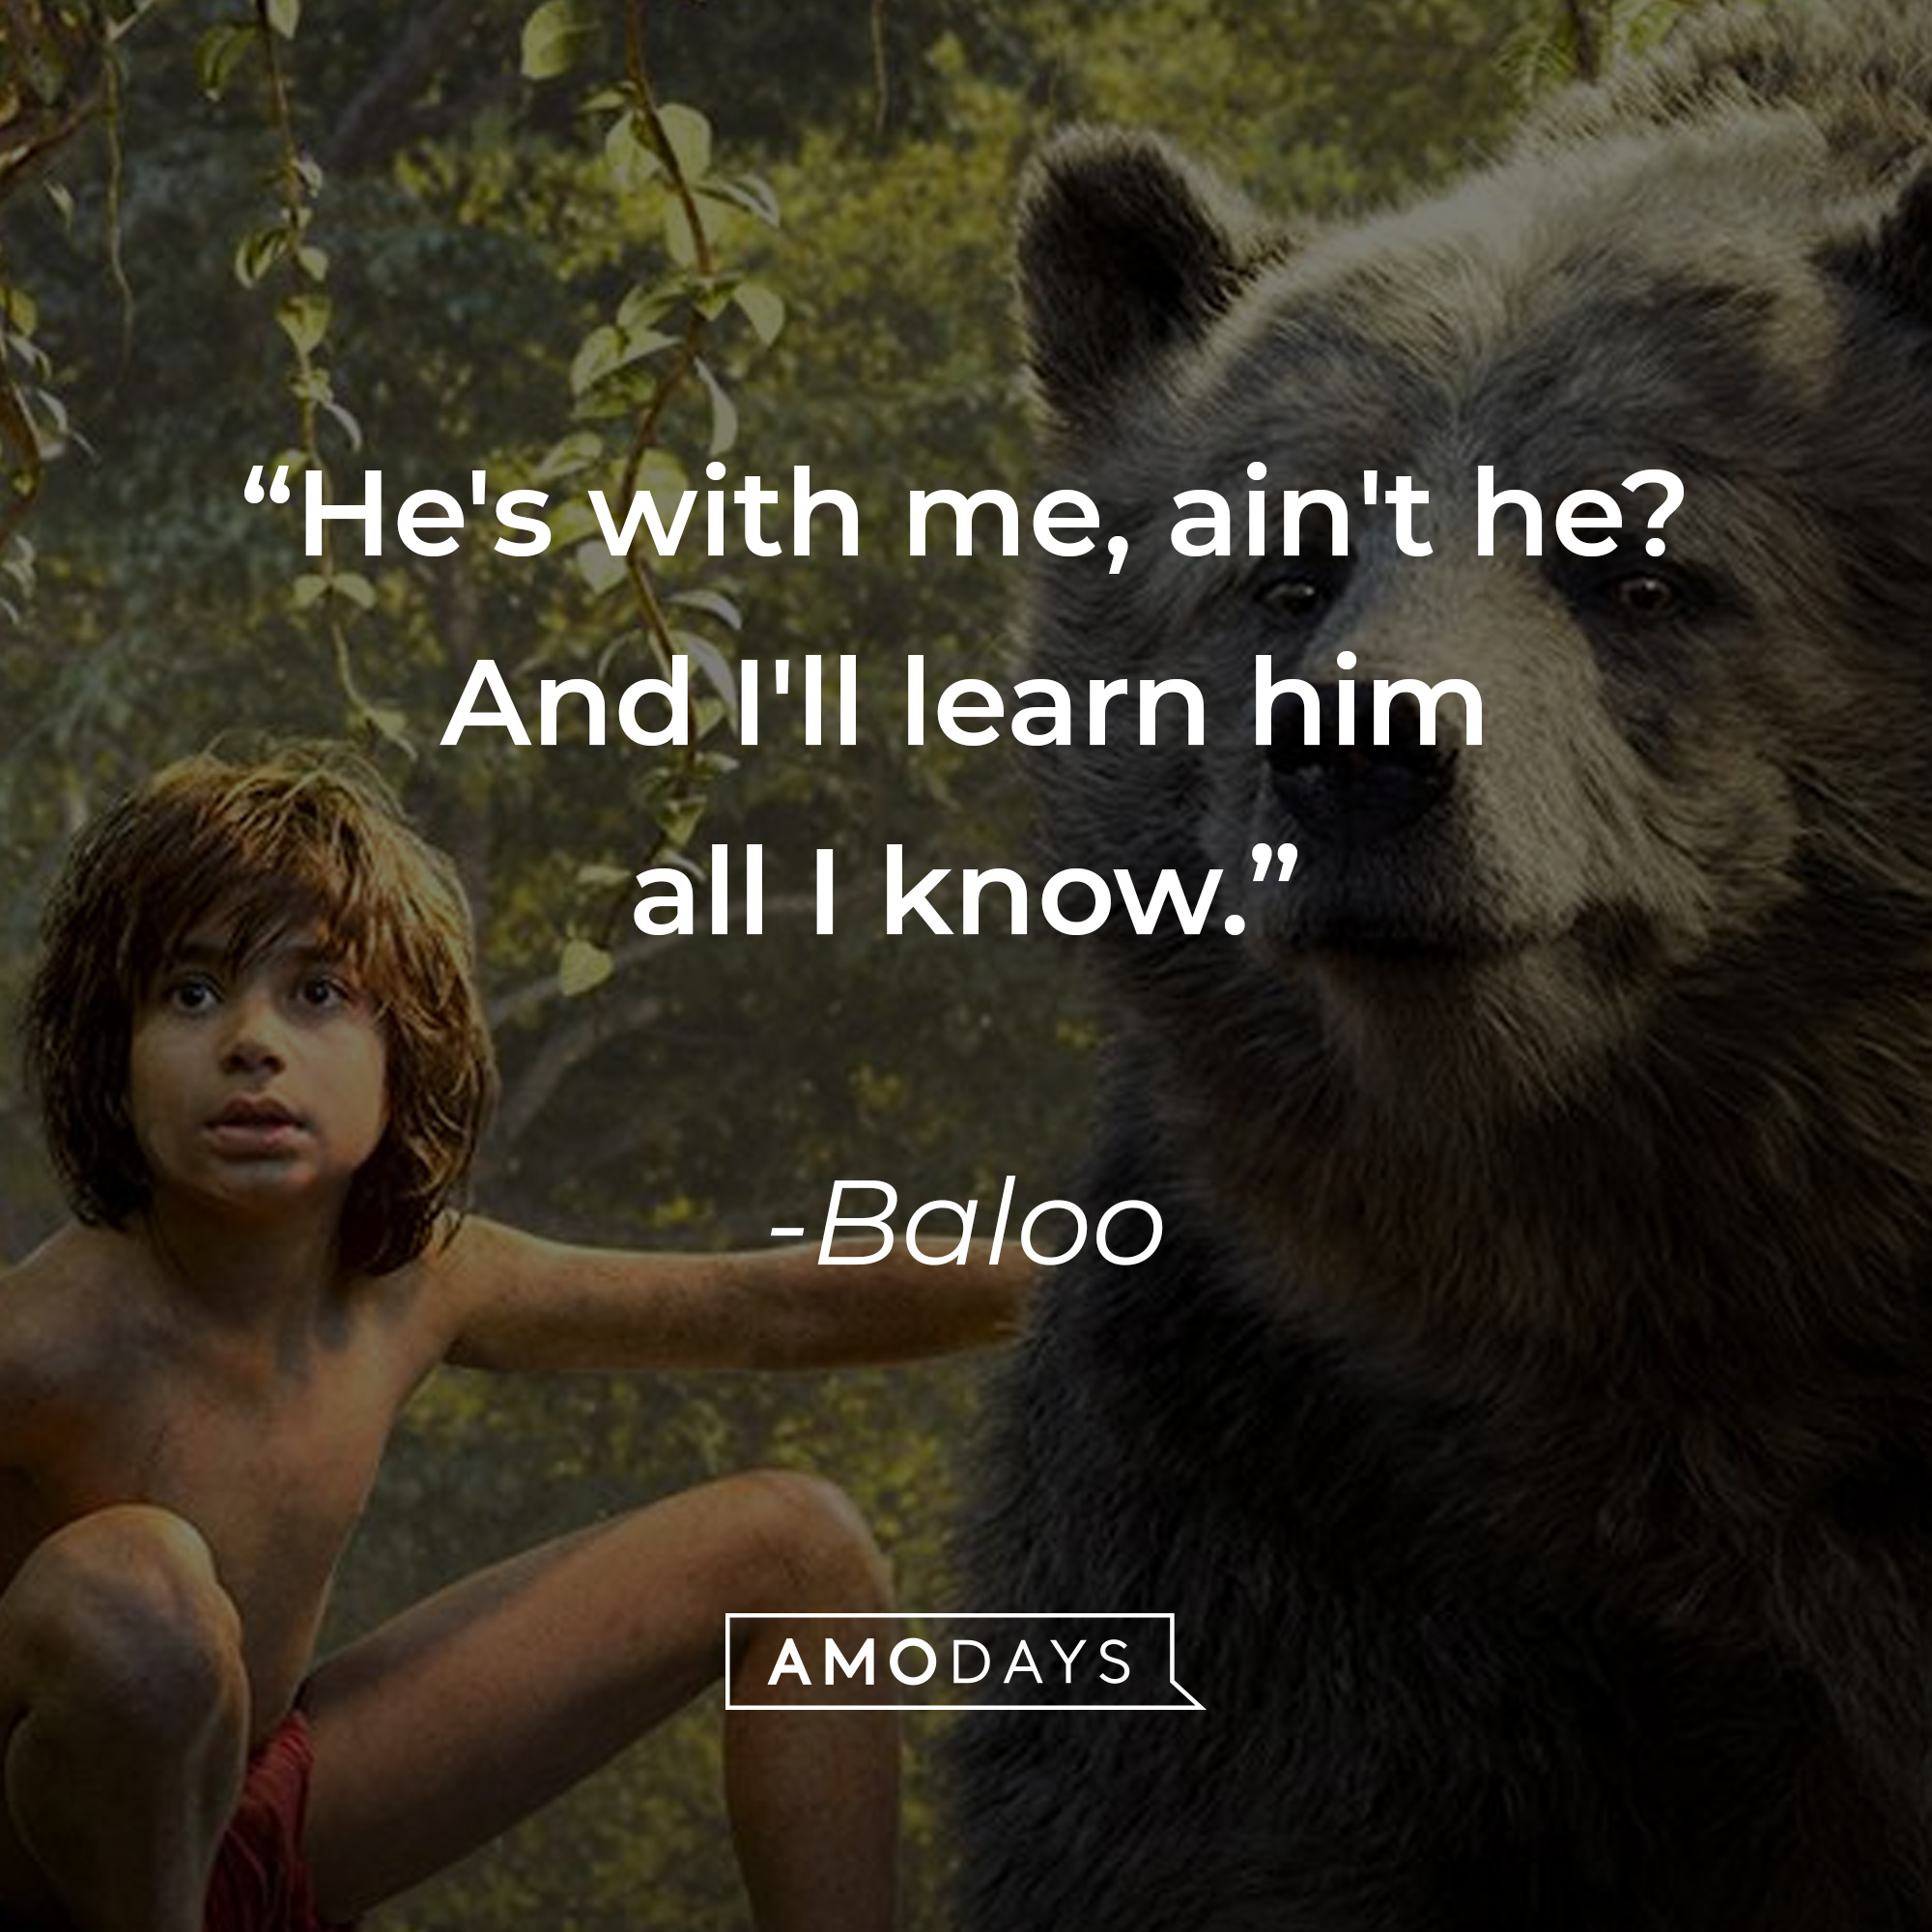 Baloo's quote: "He's with me, ain't he? And I'll learn him all I know." | Source: facebook.com/DisneyJungleBook